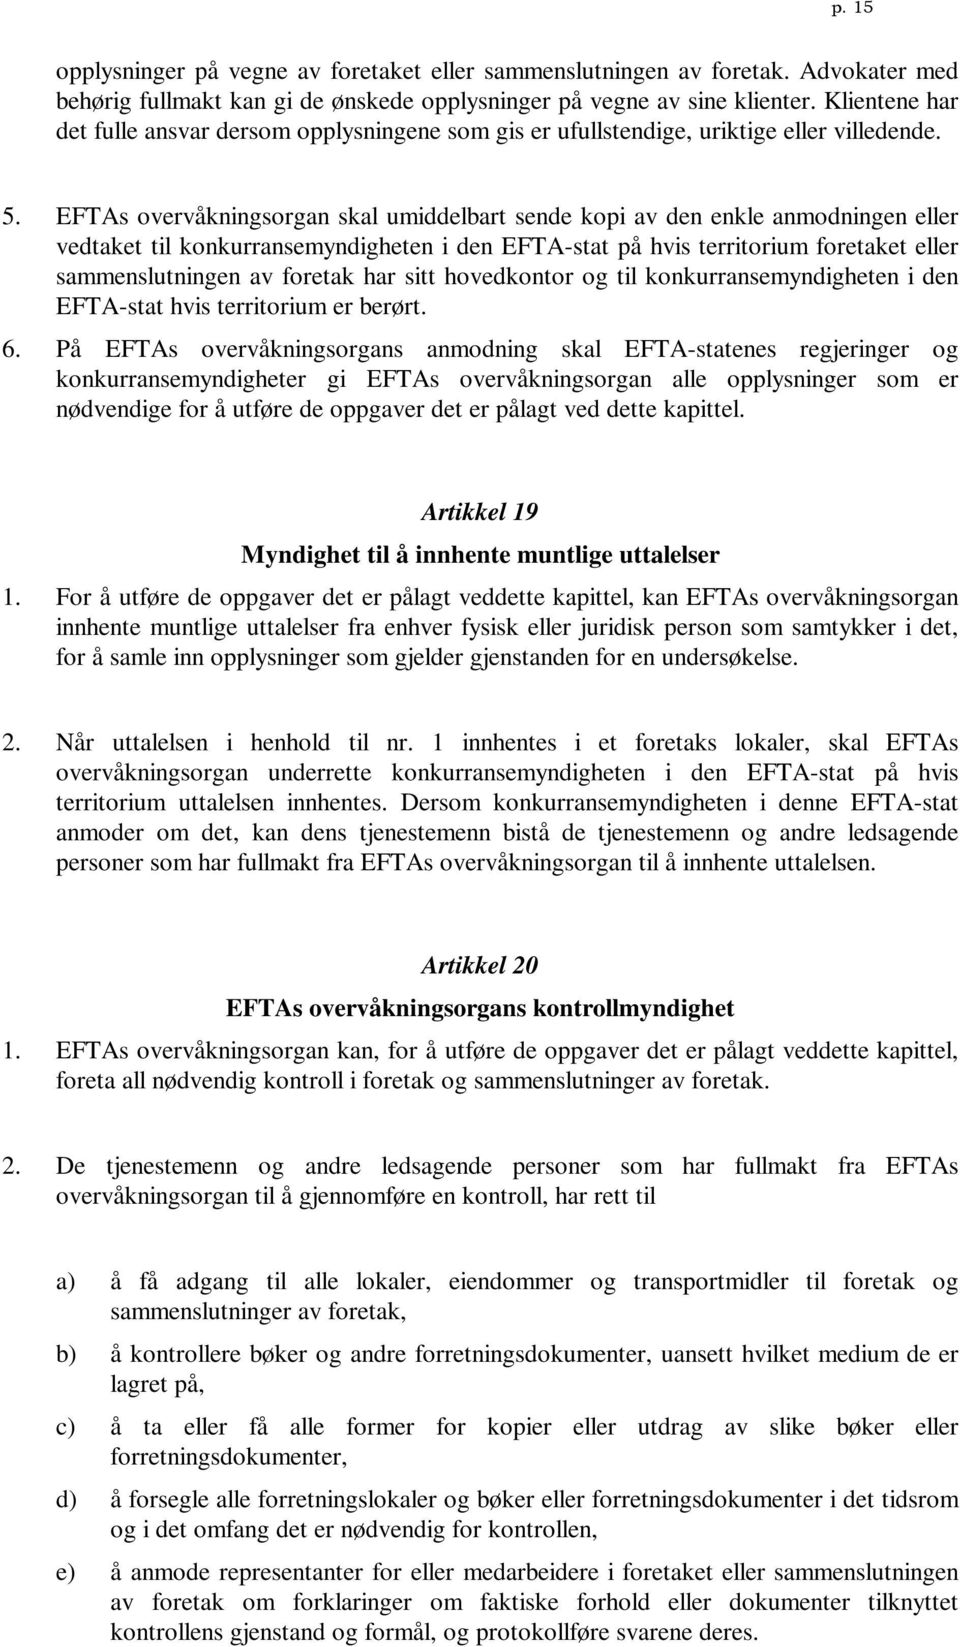 EFTAs overvåkningsorgan skal umiddelbart sende kopi av den enkle anmodningen eller vedtaket til konkurransemyndigheten i den EFTA-stat på hvis territorium foretaket eller sammenslutningen av foretak